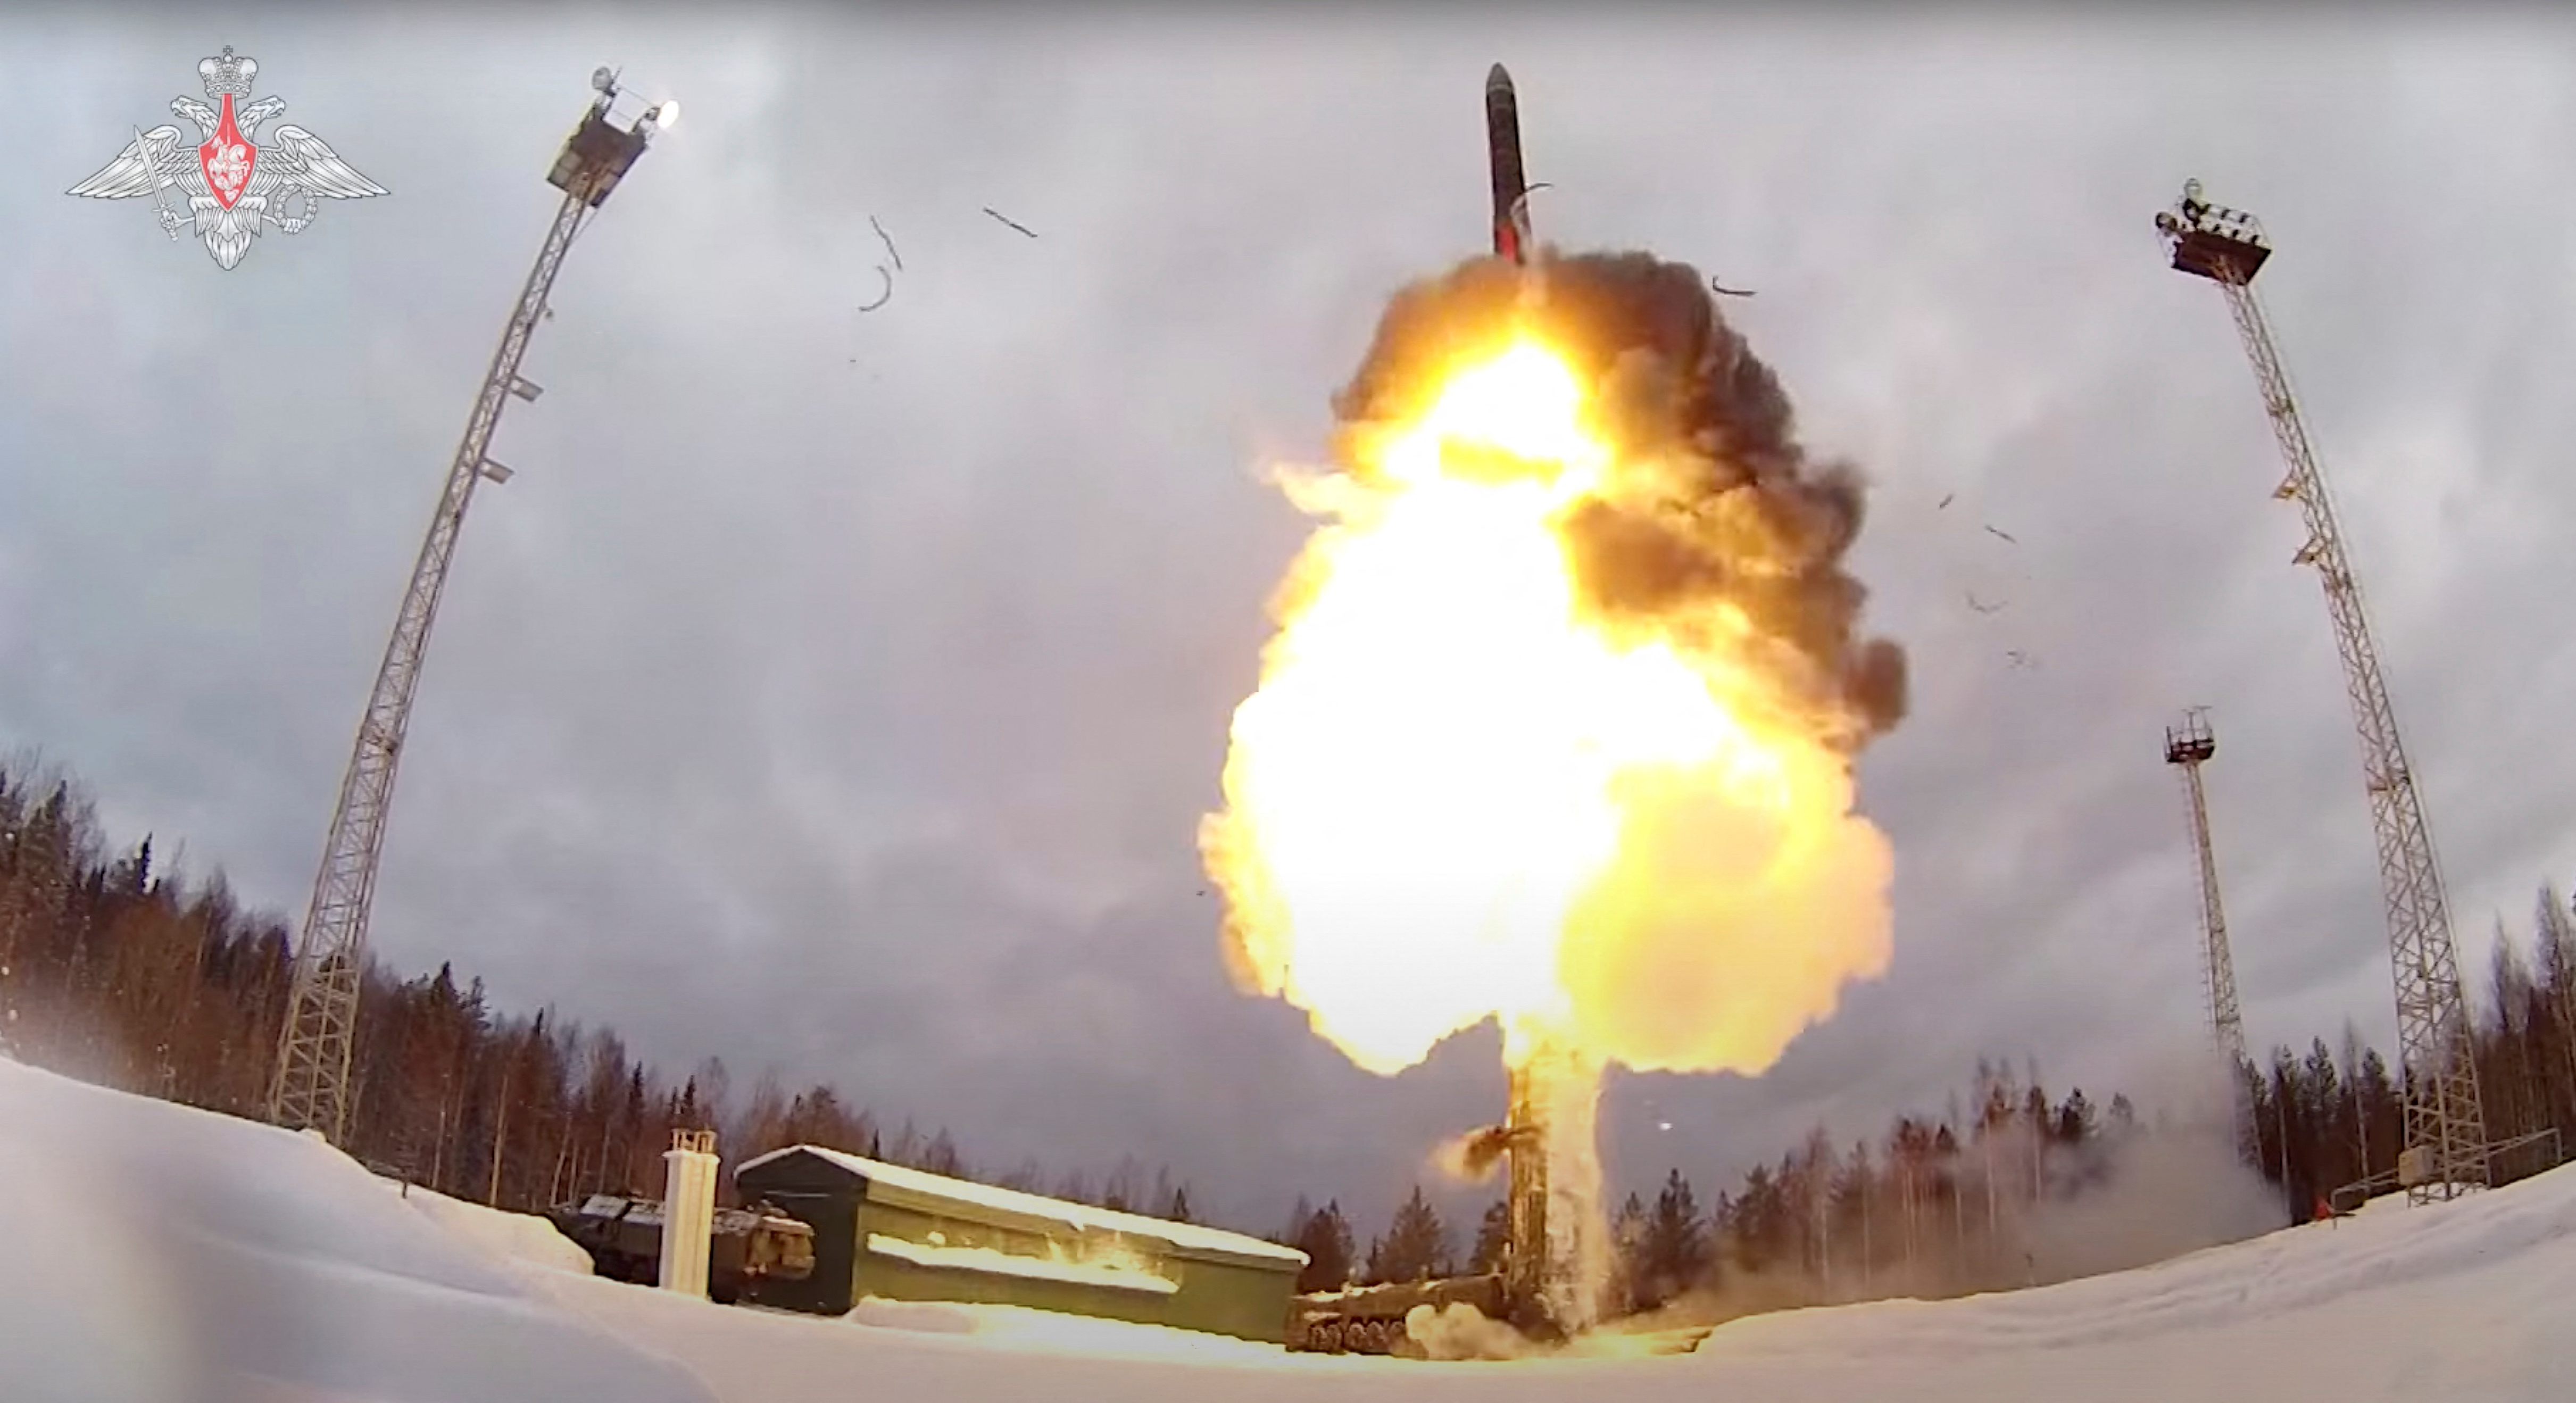  Rusia desplegará sistema de misiles balísticos Sarmat para fin de año